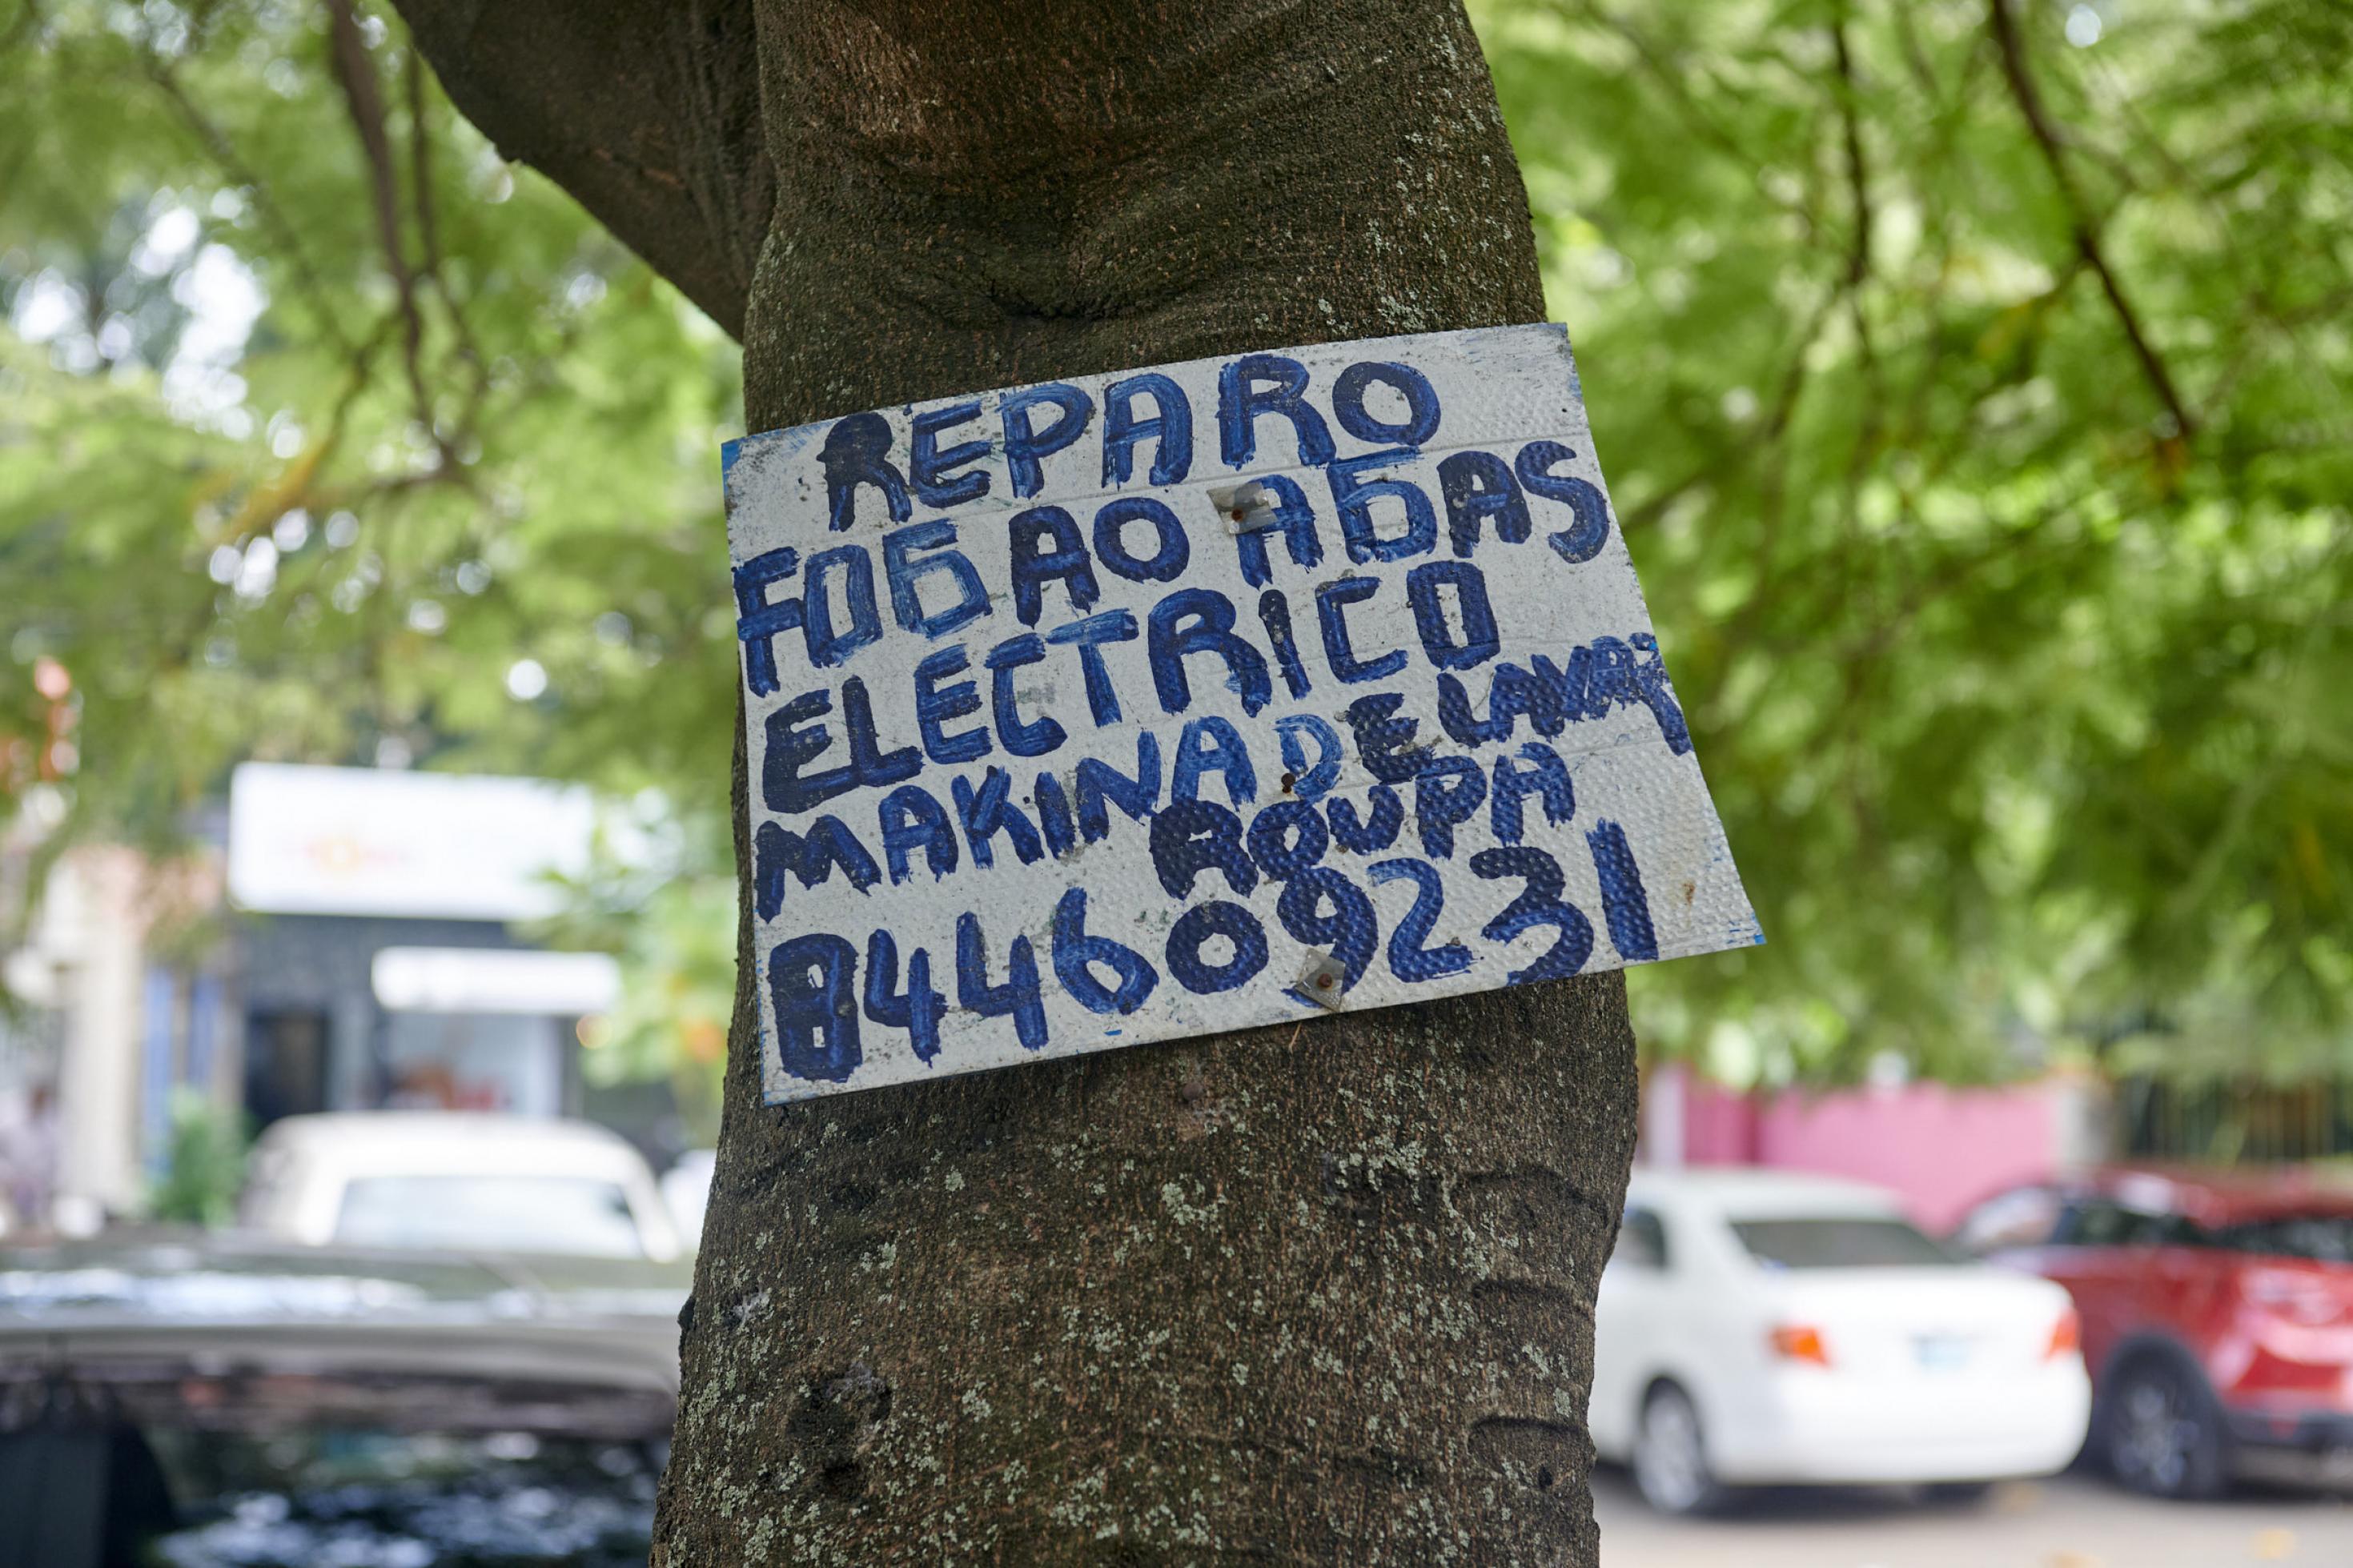 Ein selbstgemaltes Bild an einem Baum, mit der Telefonnummer eines Elektrikers